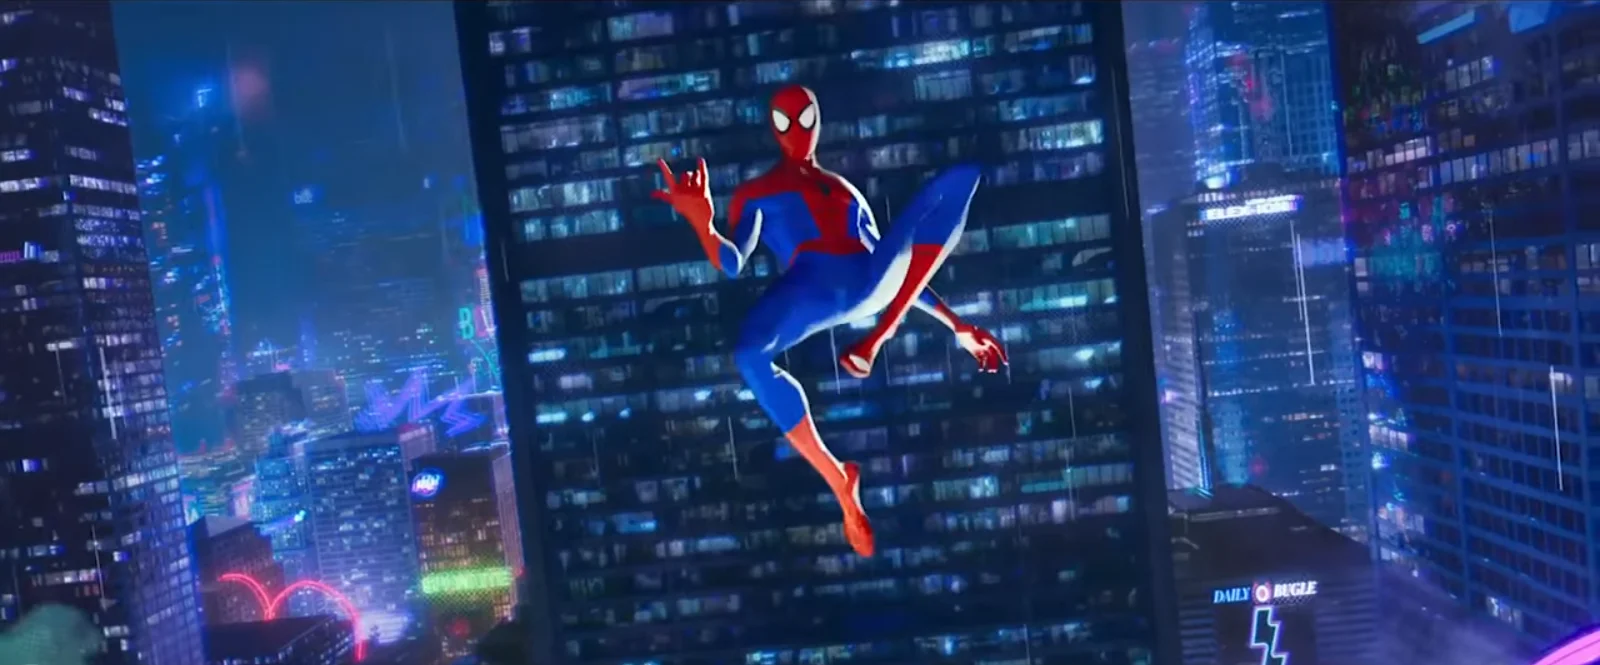 Что показали в трейлере Spider-Man: Into the Spider-Verse. Зеленый гоблин, Гвен-паук и Кингпин? - фото 4